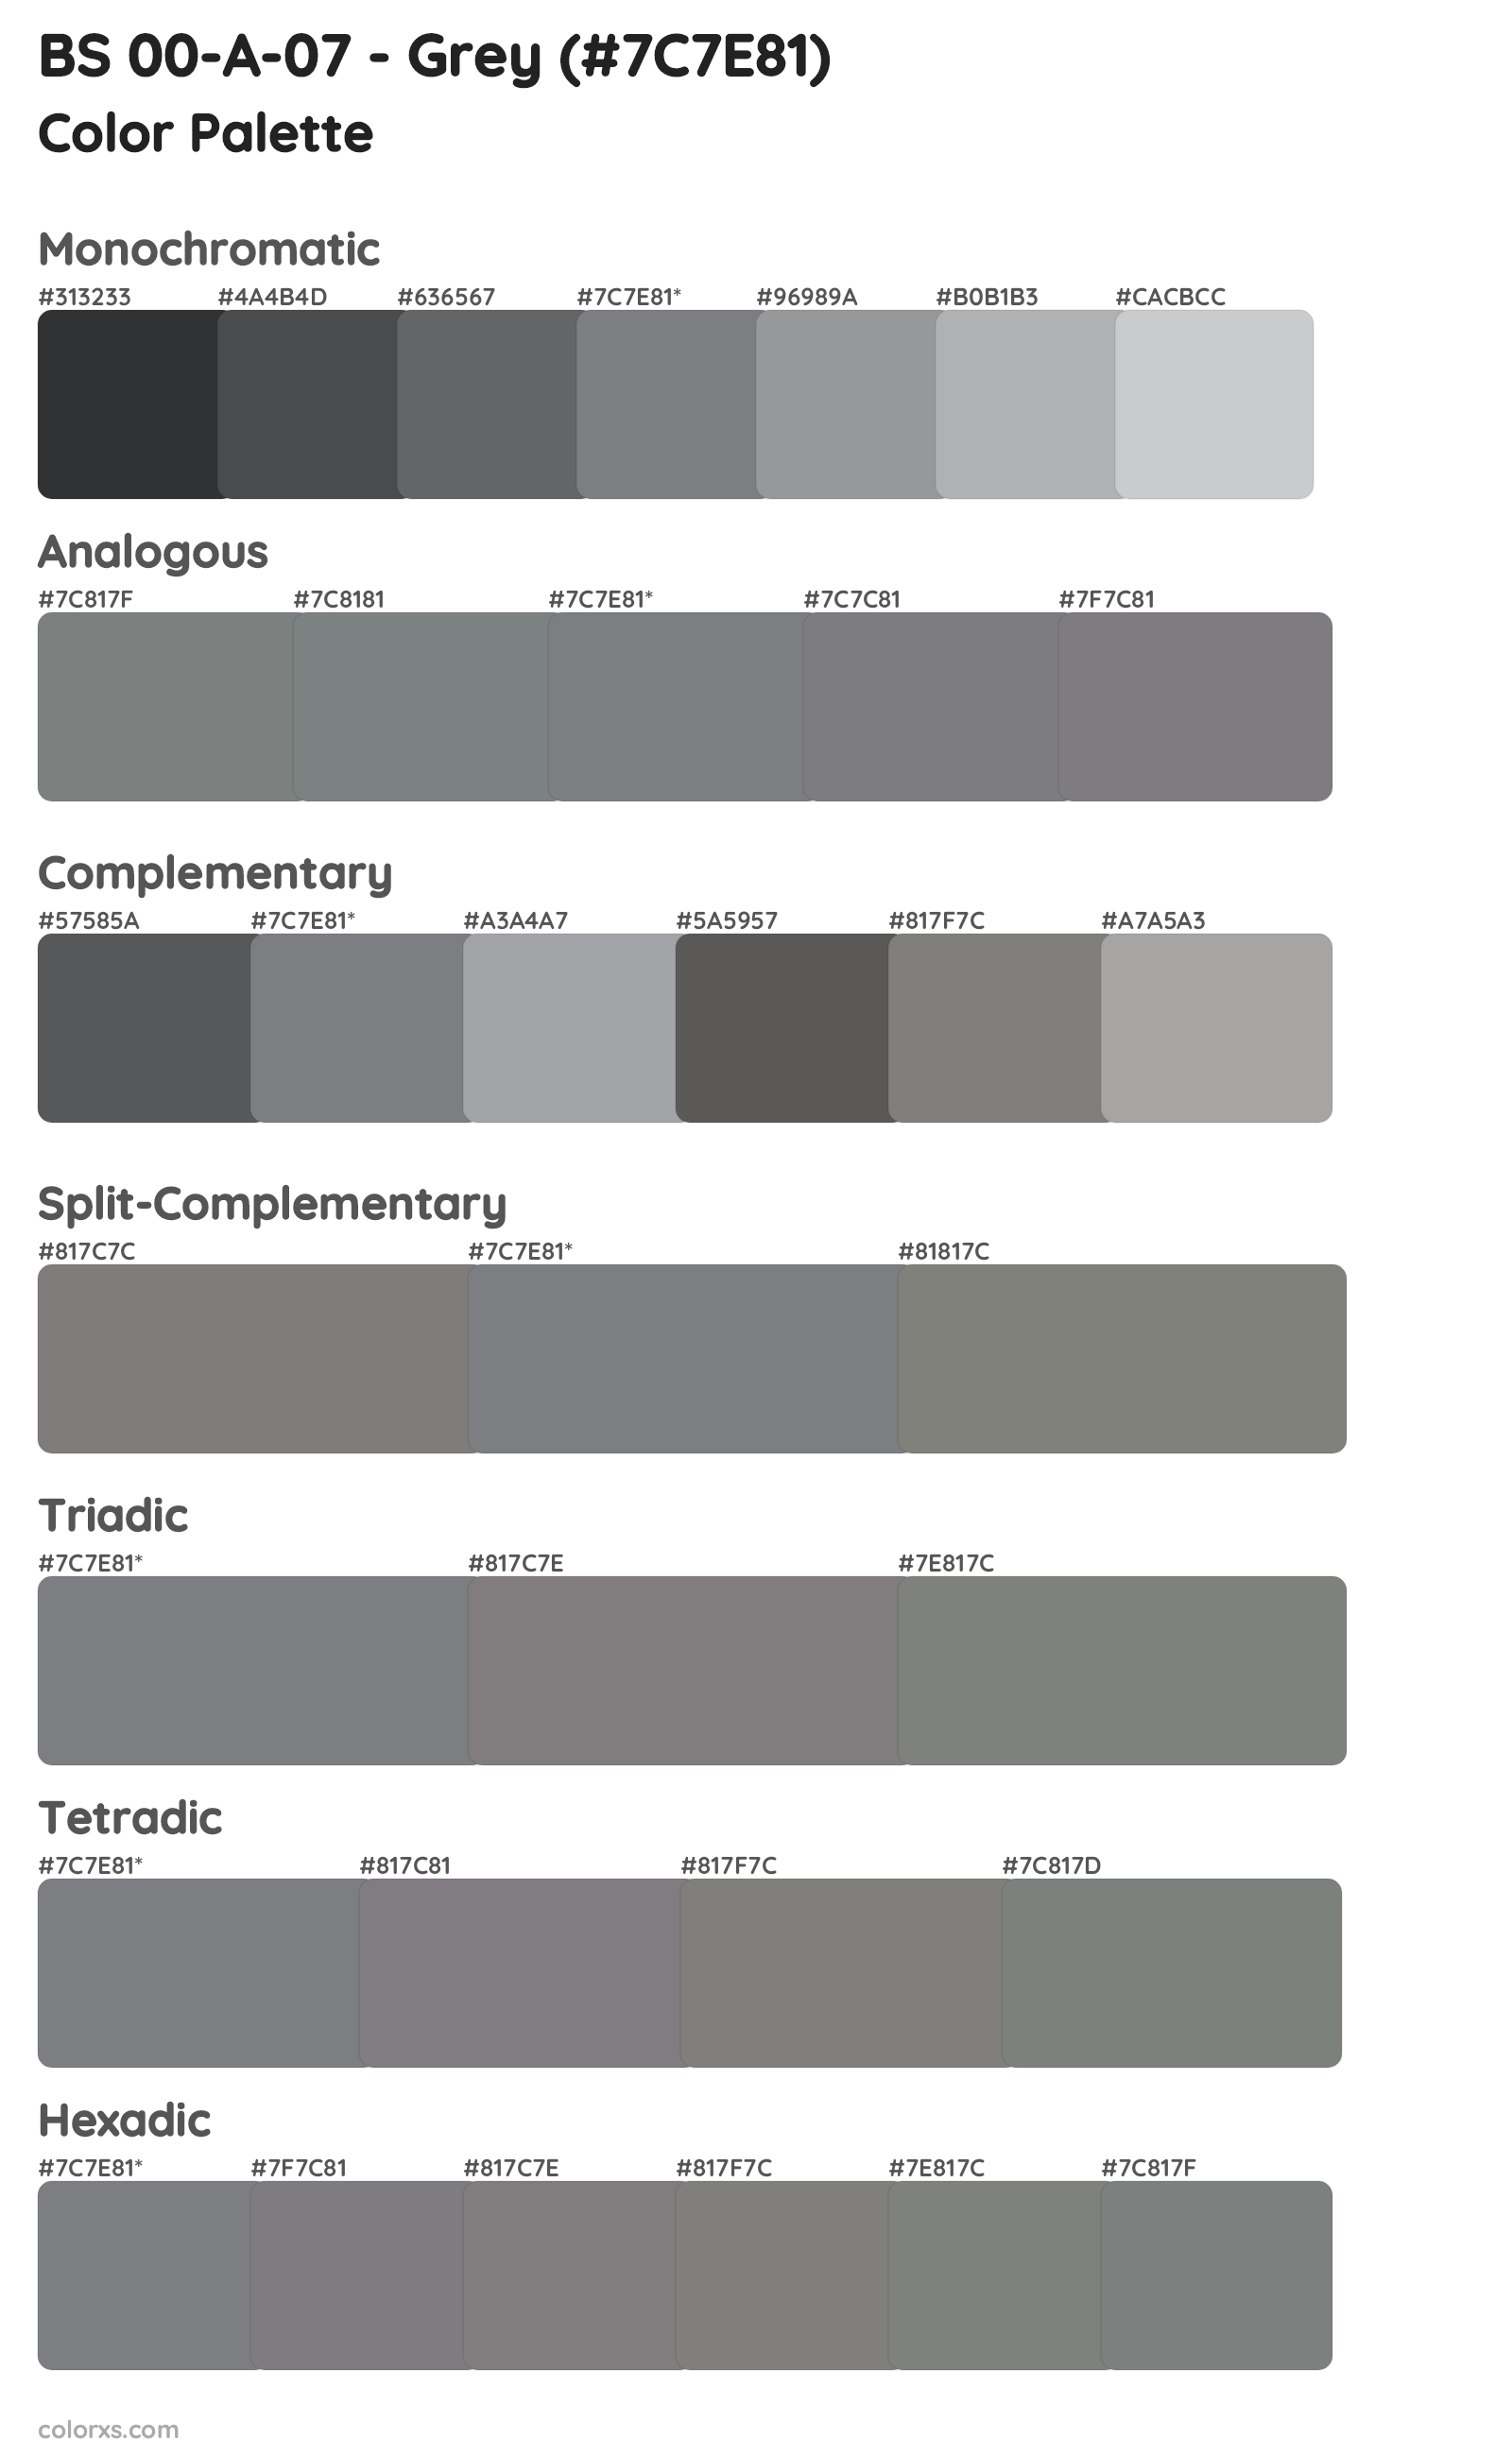 BS 00-A-07 - Grey Color Scheme Palettes